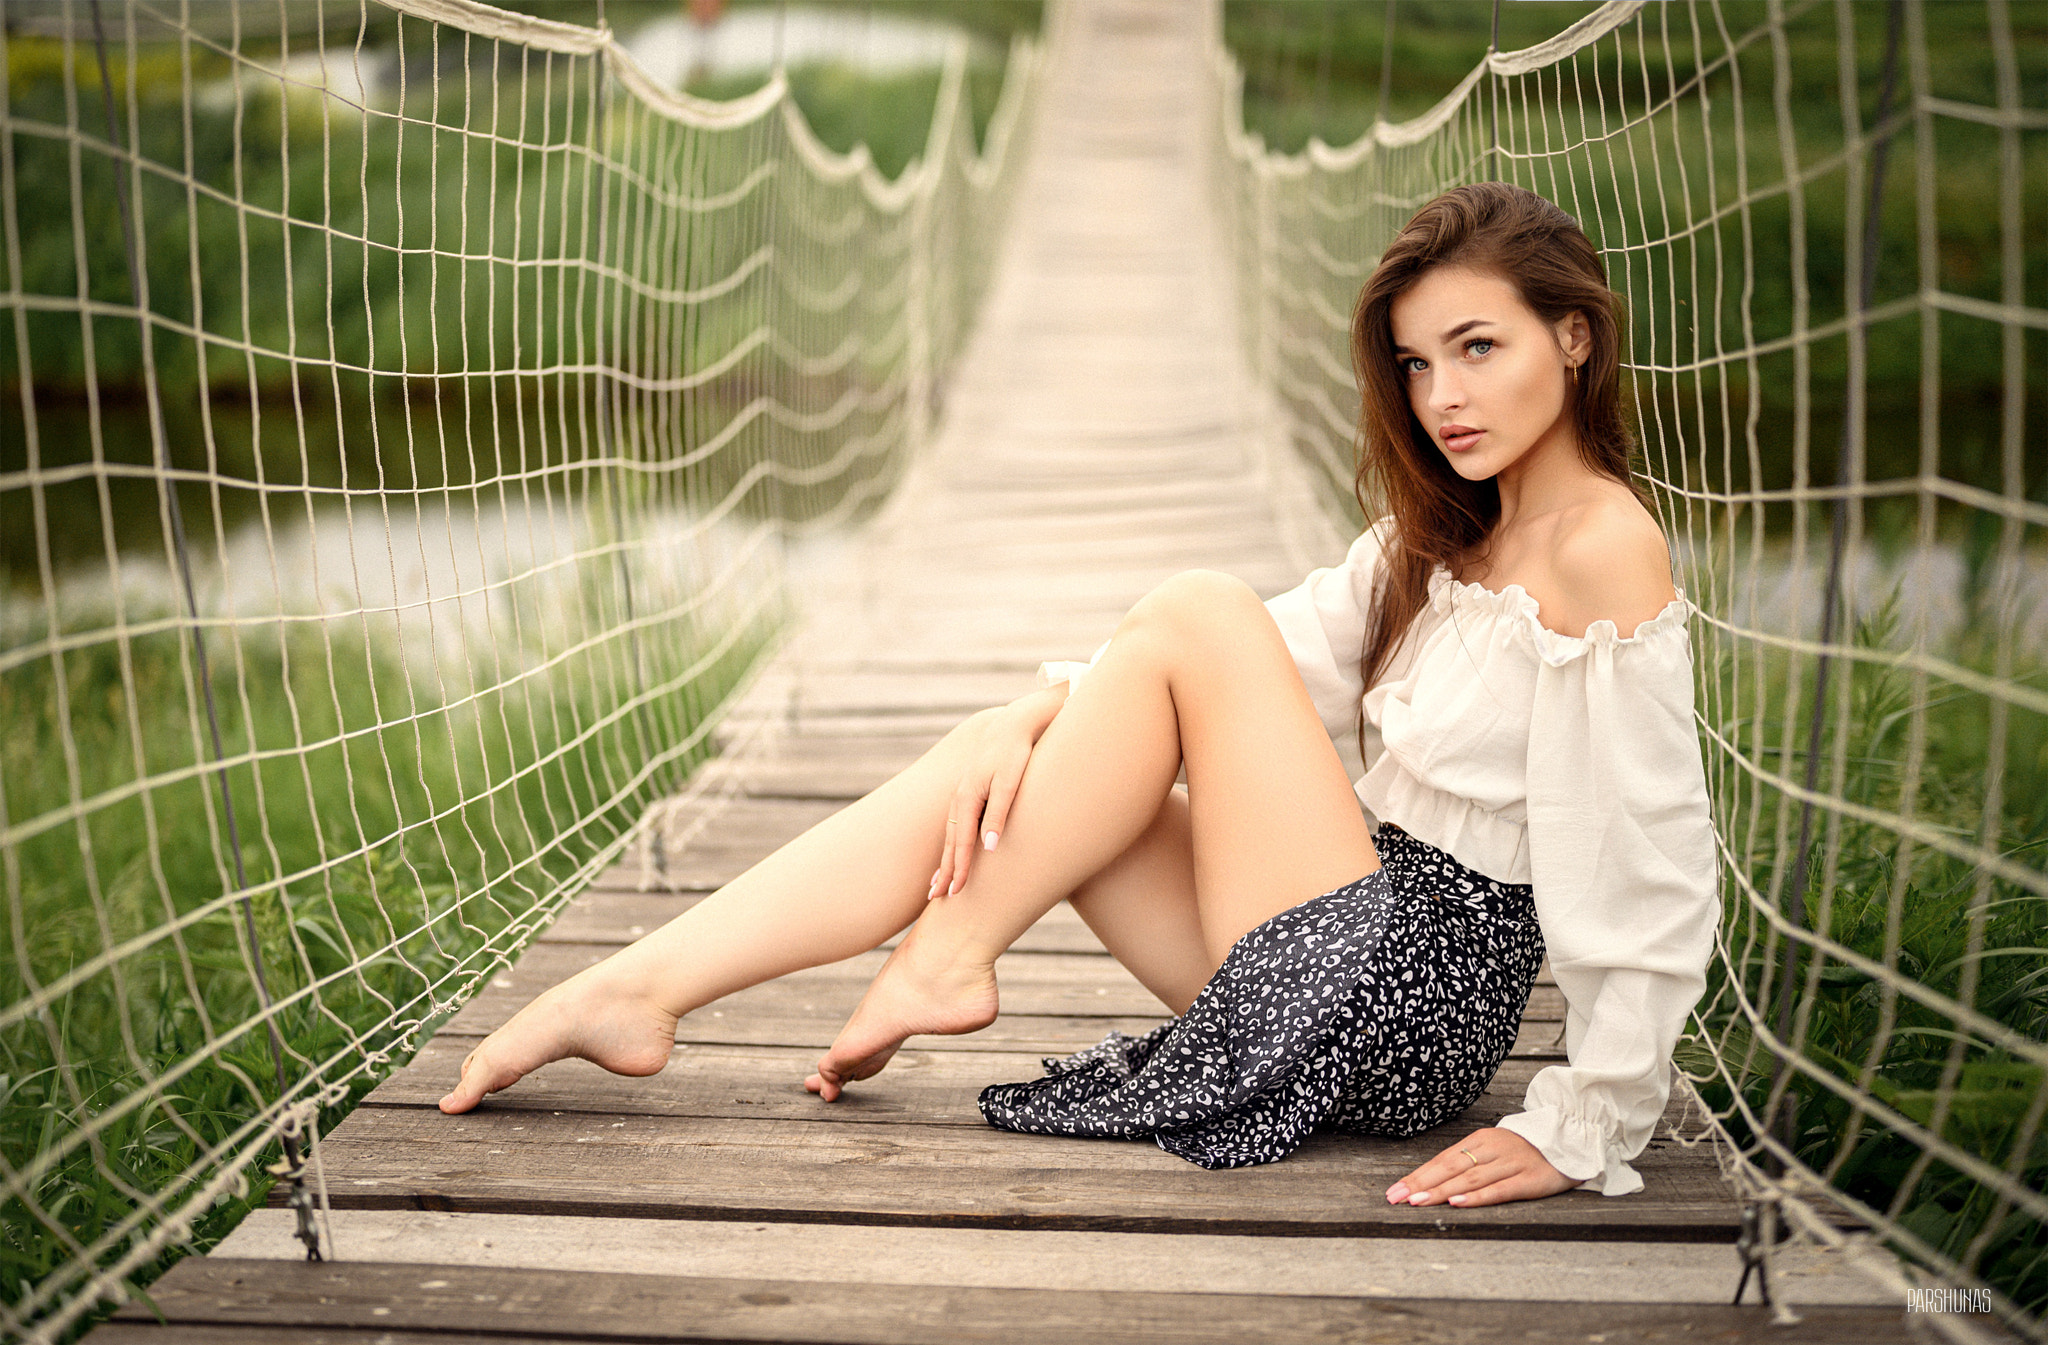 Anton Parshunas Women Brunette Bridge Barefoot Skirt 2048x1345